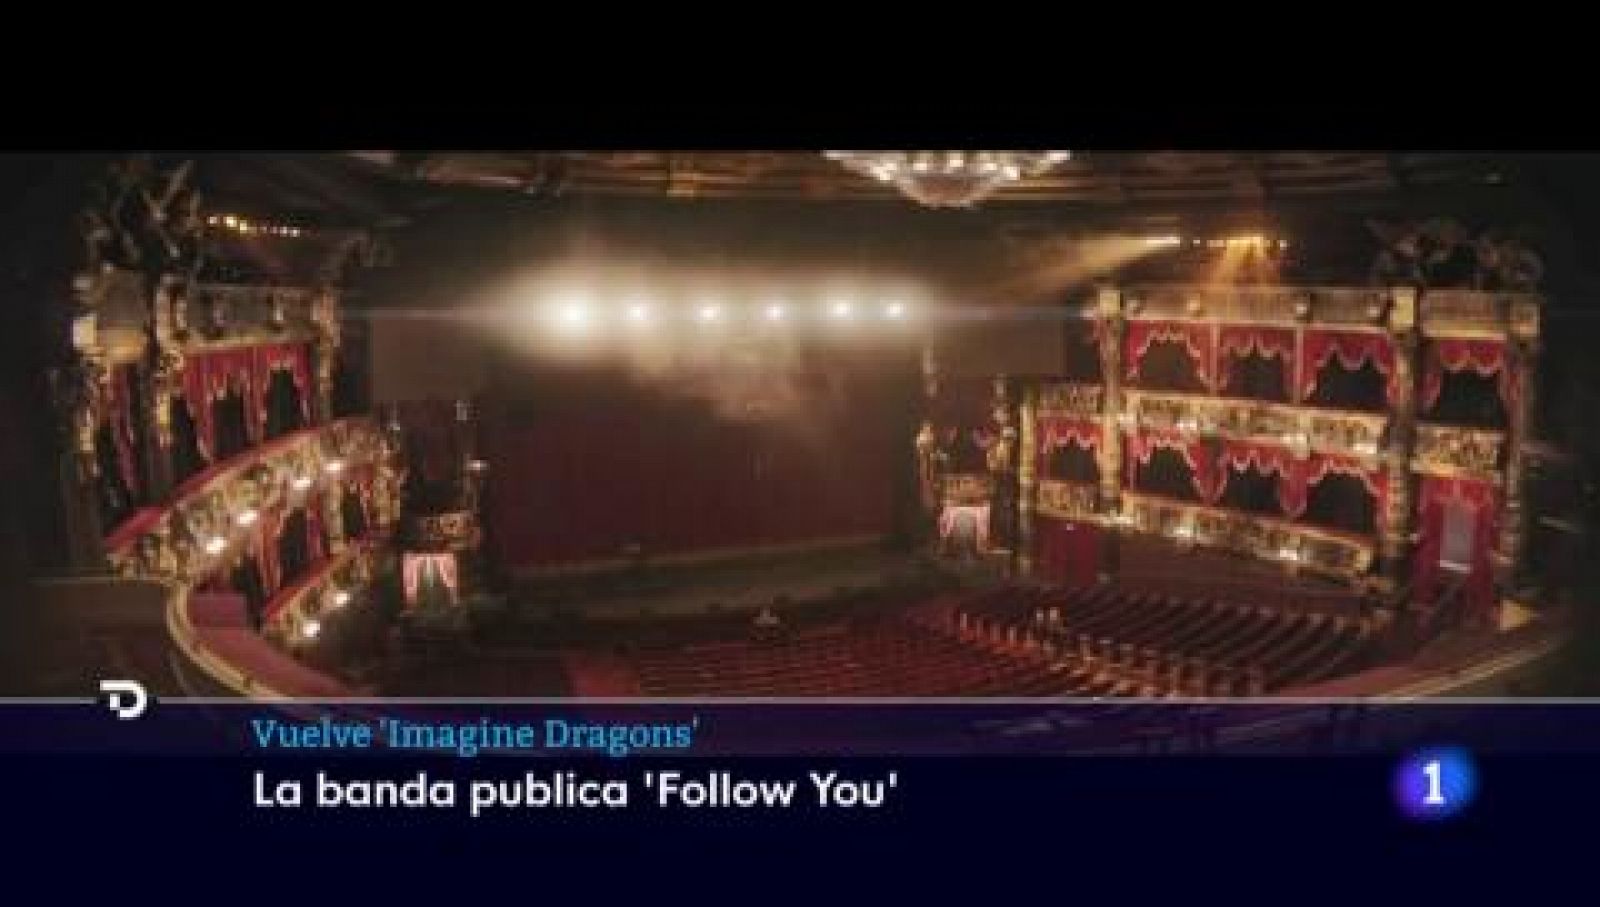 Tras años de silencio, Imagine Dragons regresa con un nuevo tema "Follow You"